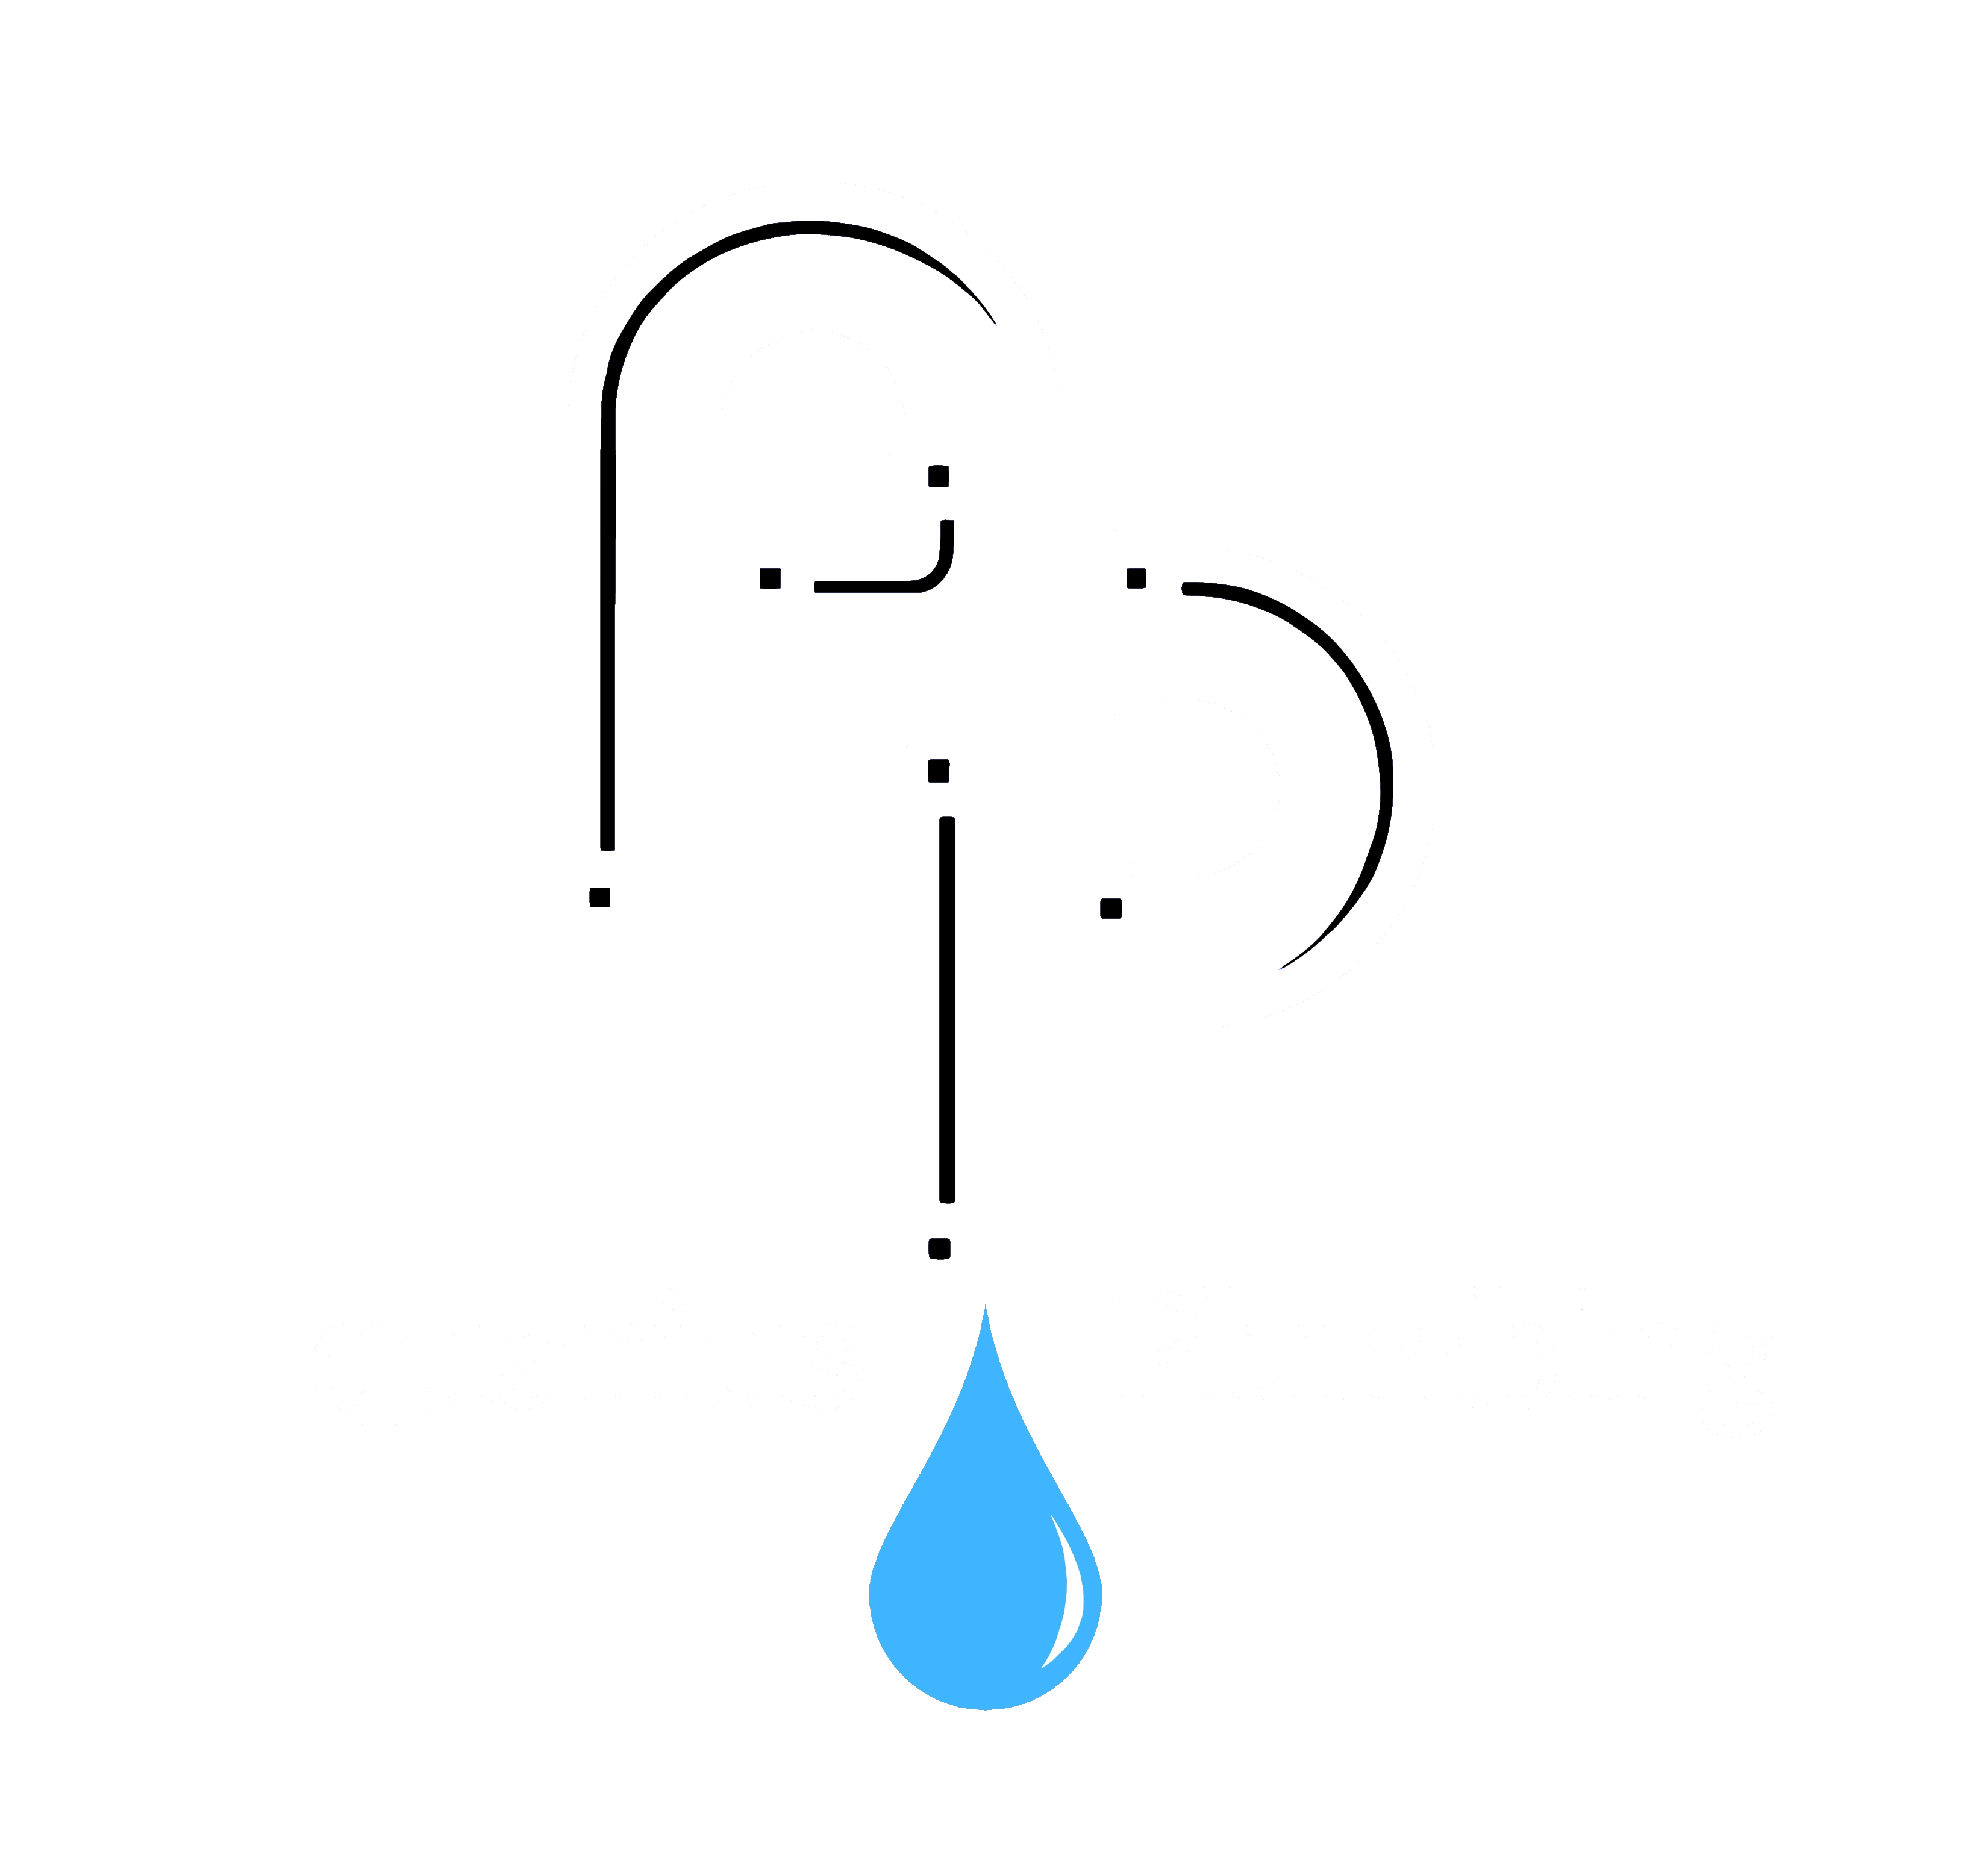 Aquarius Plumbing